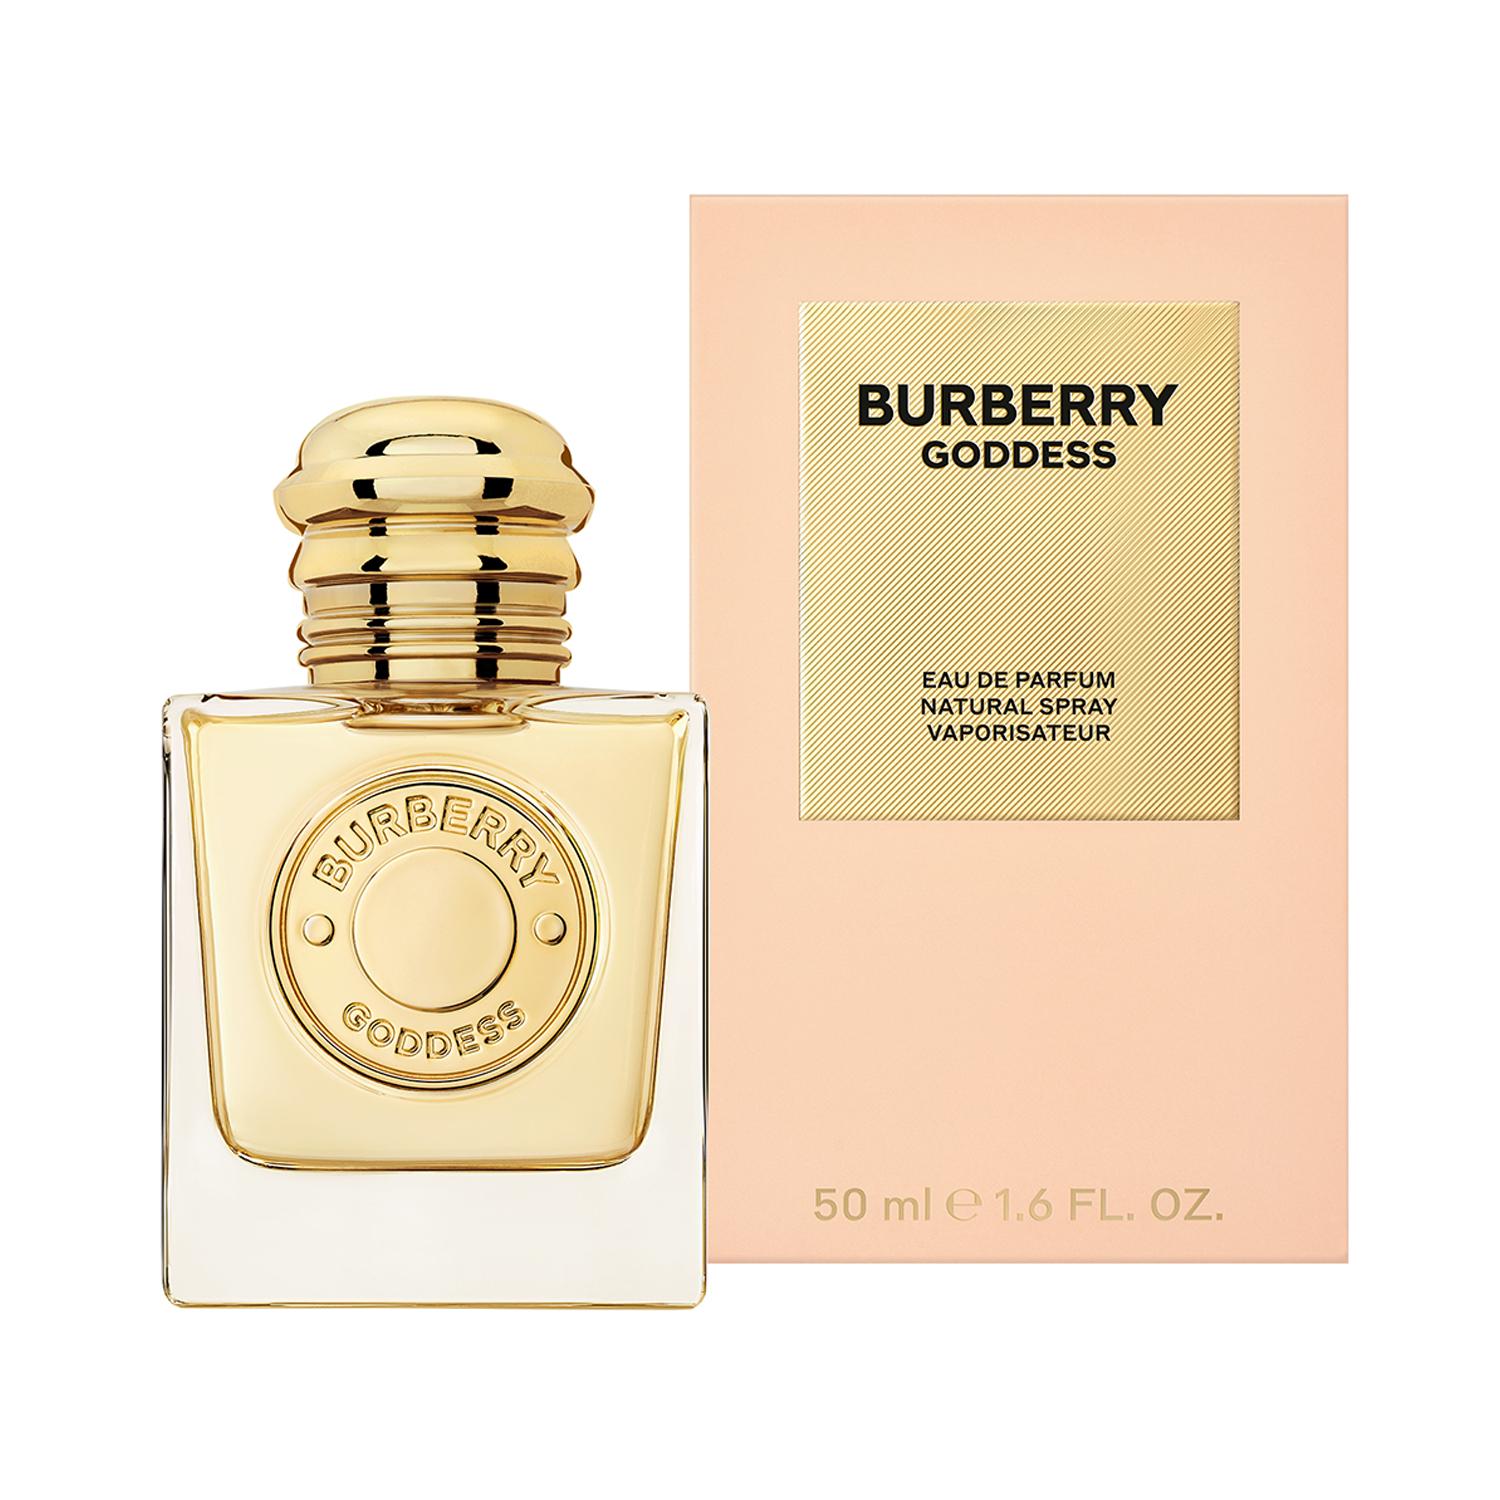 Burberry | Burberry Goddess Eau De Parfum (50ml)